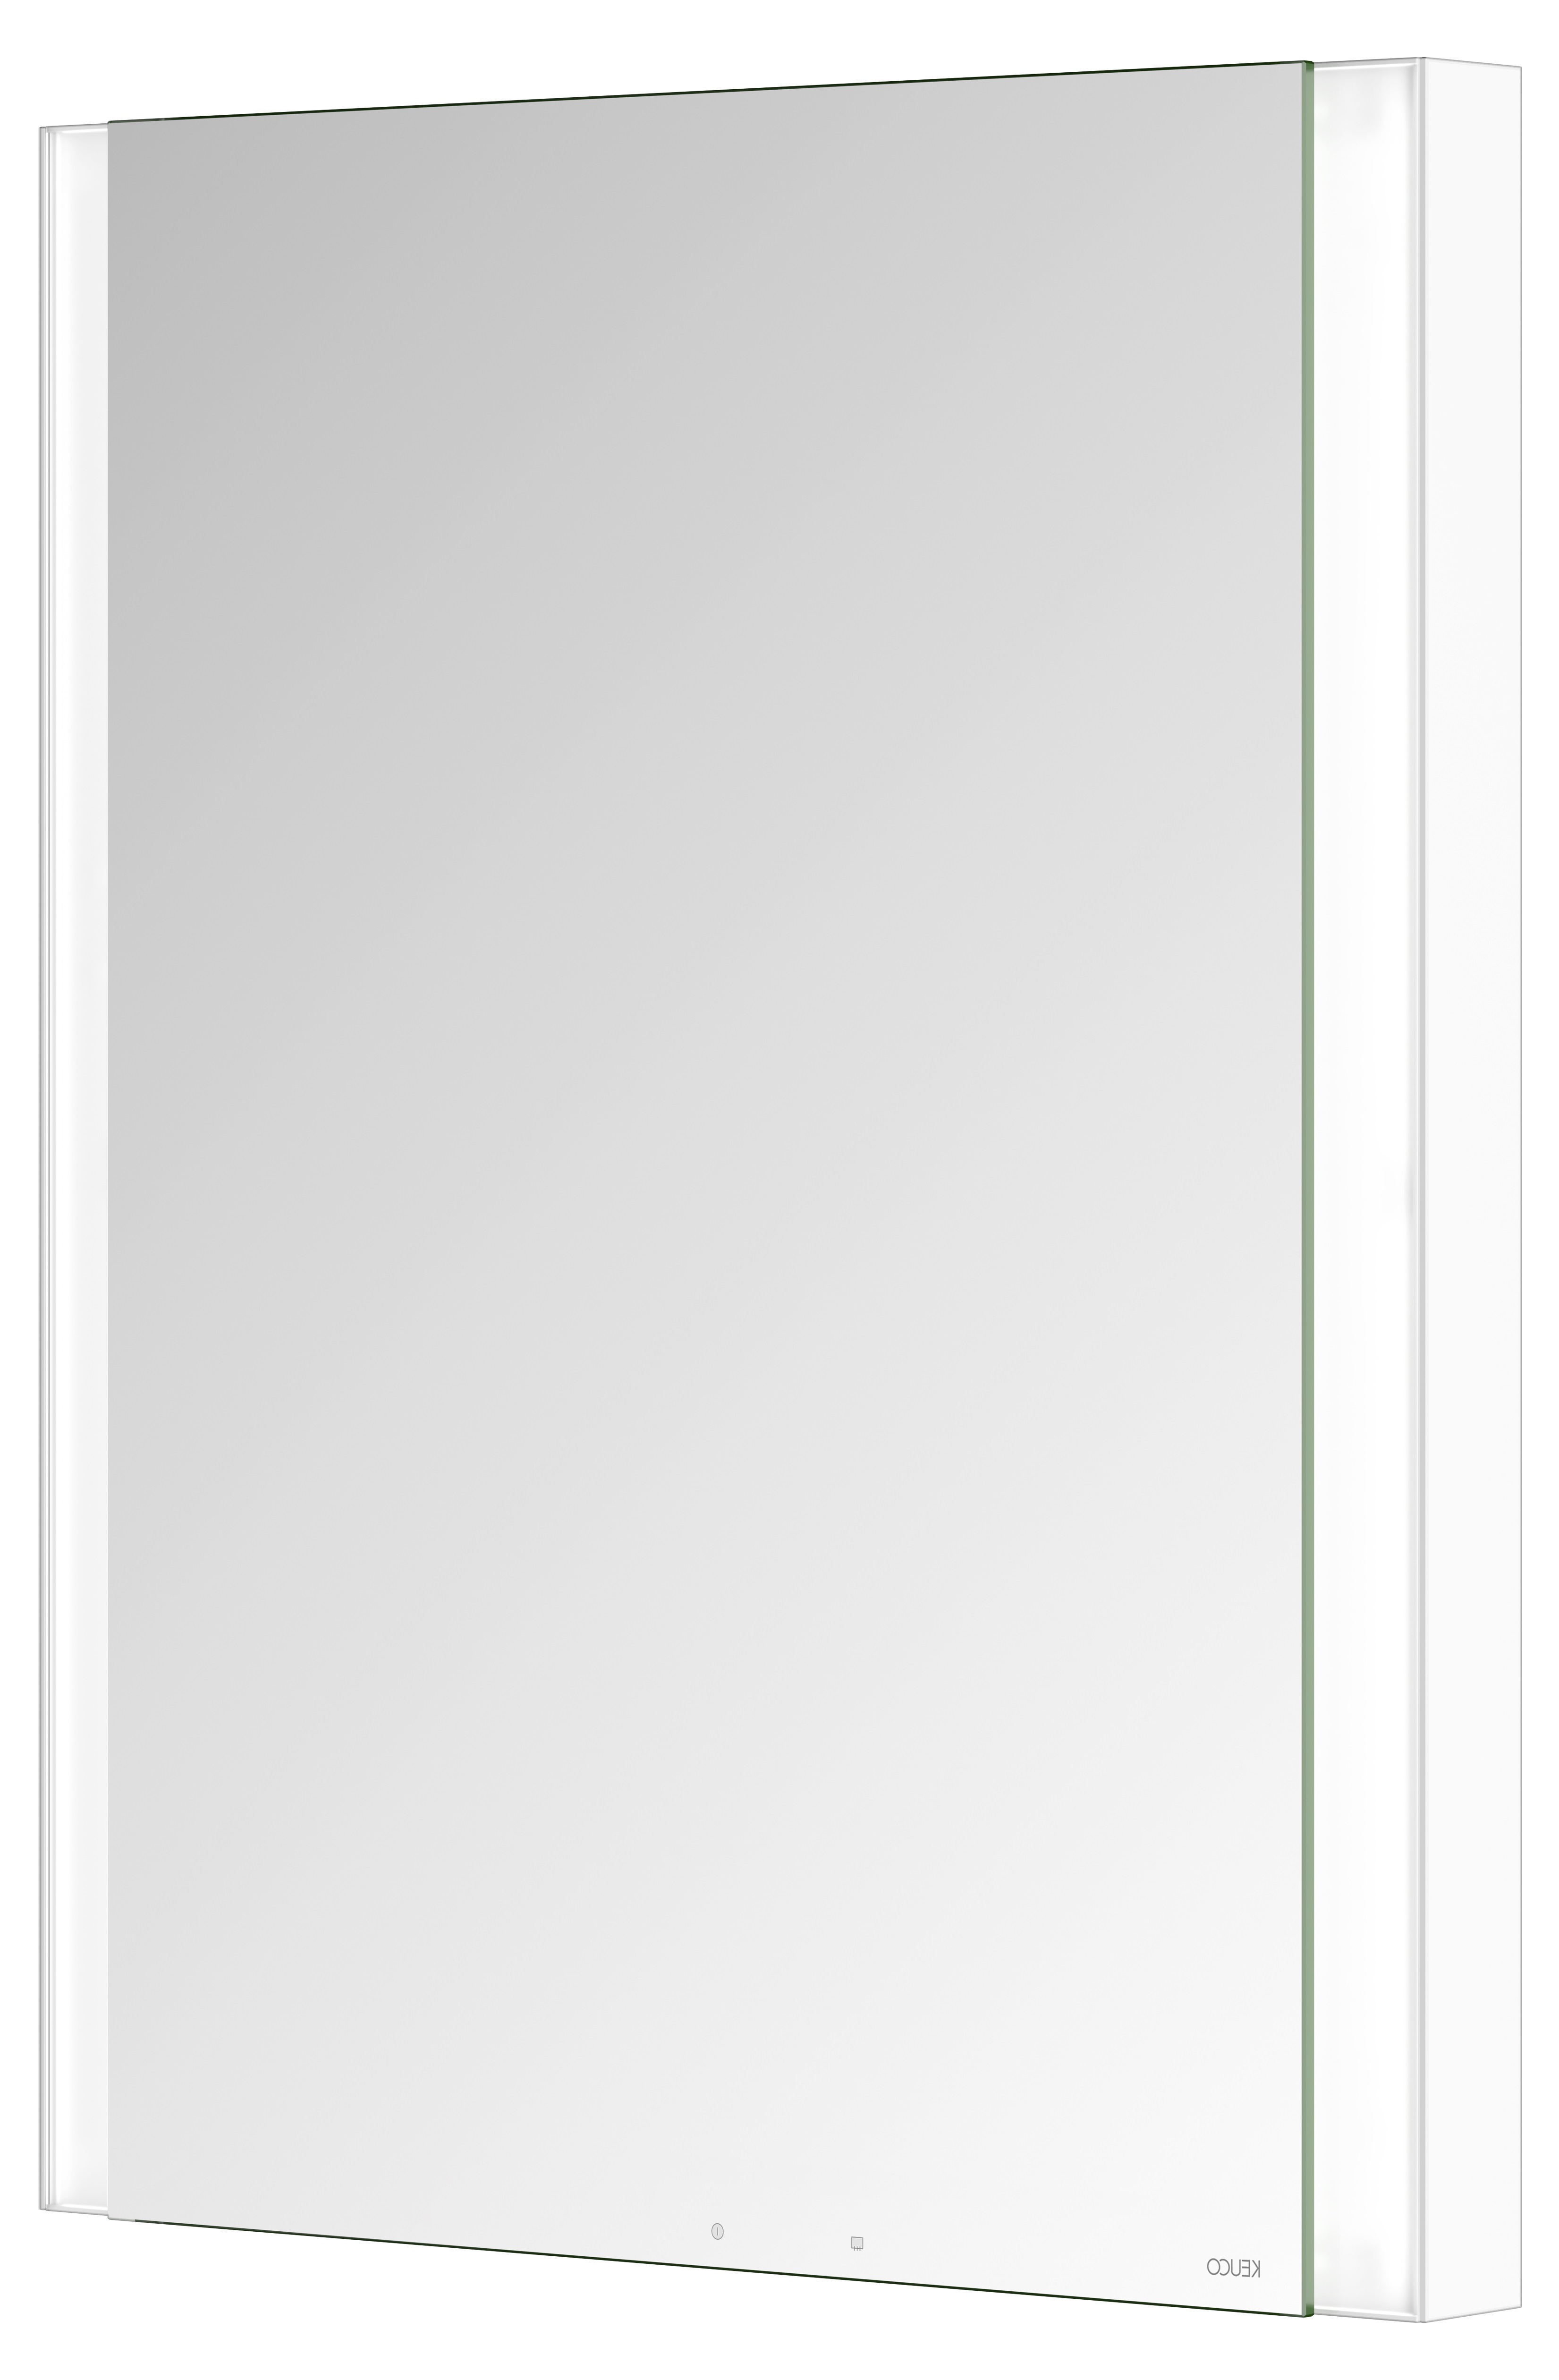 Правый зеркальный шкаф с подсветкой и подогревом для встраиваемого монтажа KEUCO Somaris 14511 511101 115 мм х 600 мм х 710 мм, с 1 поворотной дверцей, цвет корпуса Белый матовый